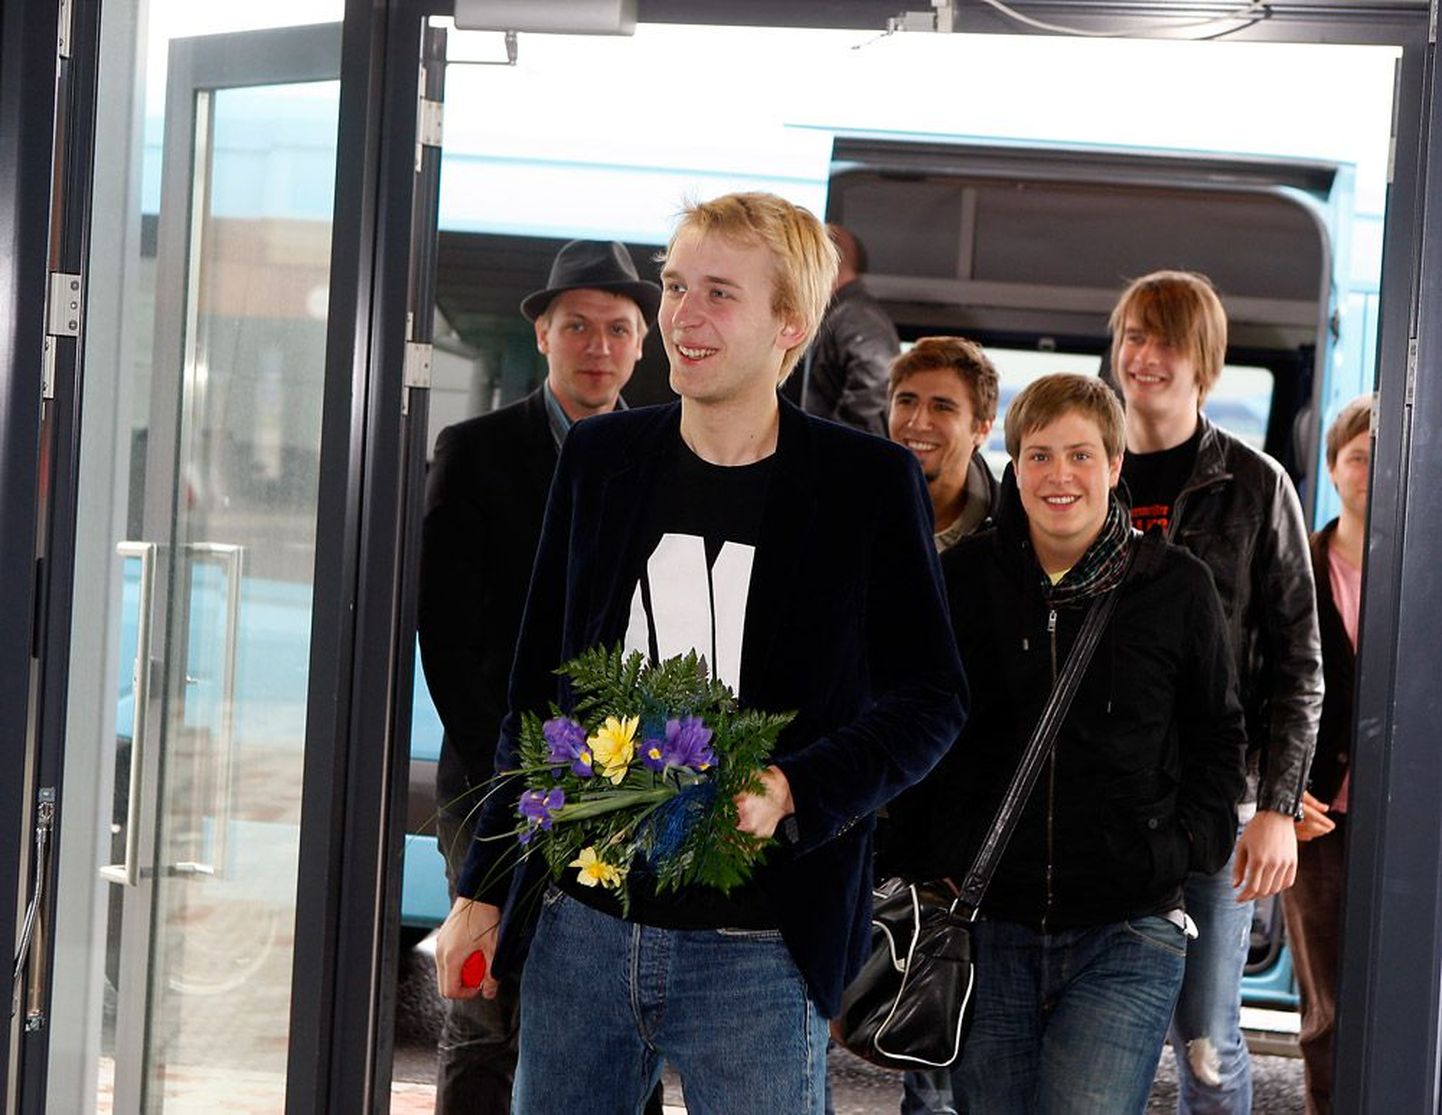 Malcolm Lincoln jõudis eile Oslost Tallinna. Lennujaamas tehtud pildil on Kristjan Knight, Robin Juhkental, Andrei Ozdoba, Mick Pedaja, Jaanus Saago ja Madis Kubu.